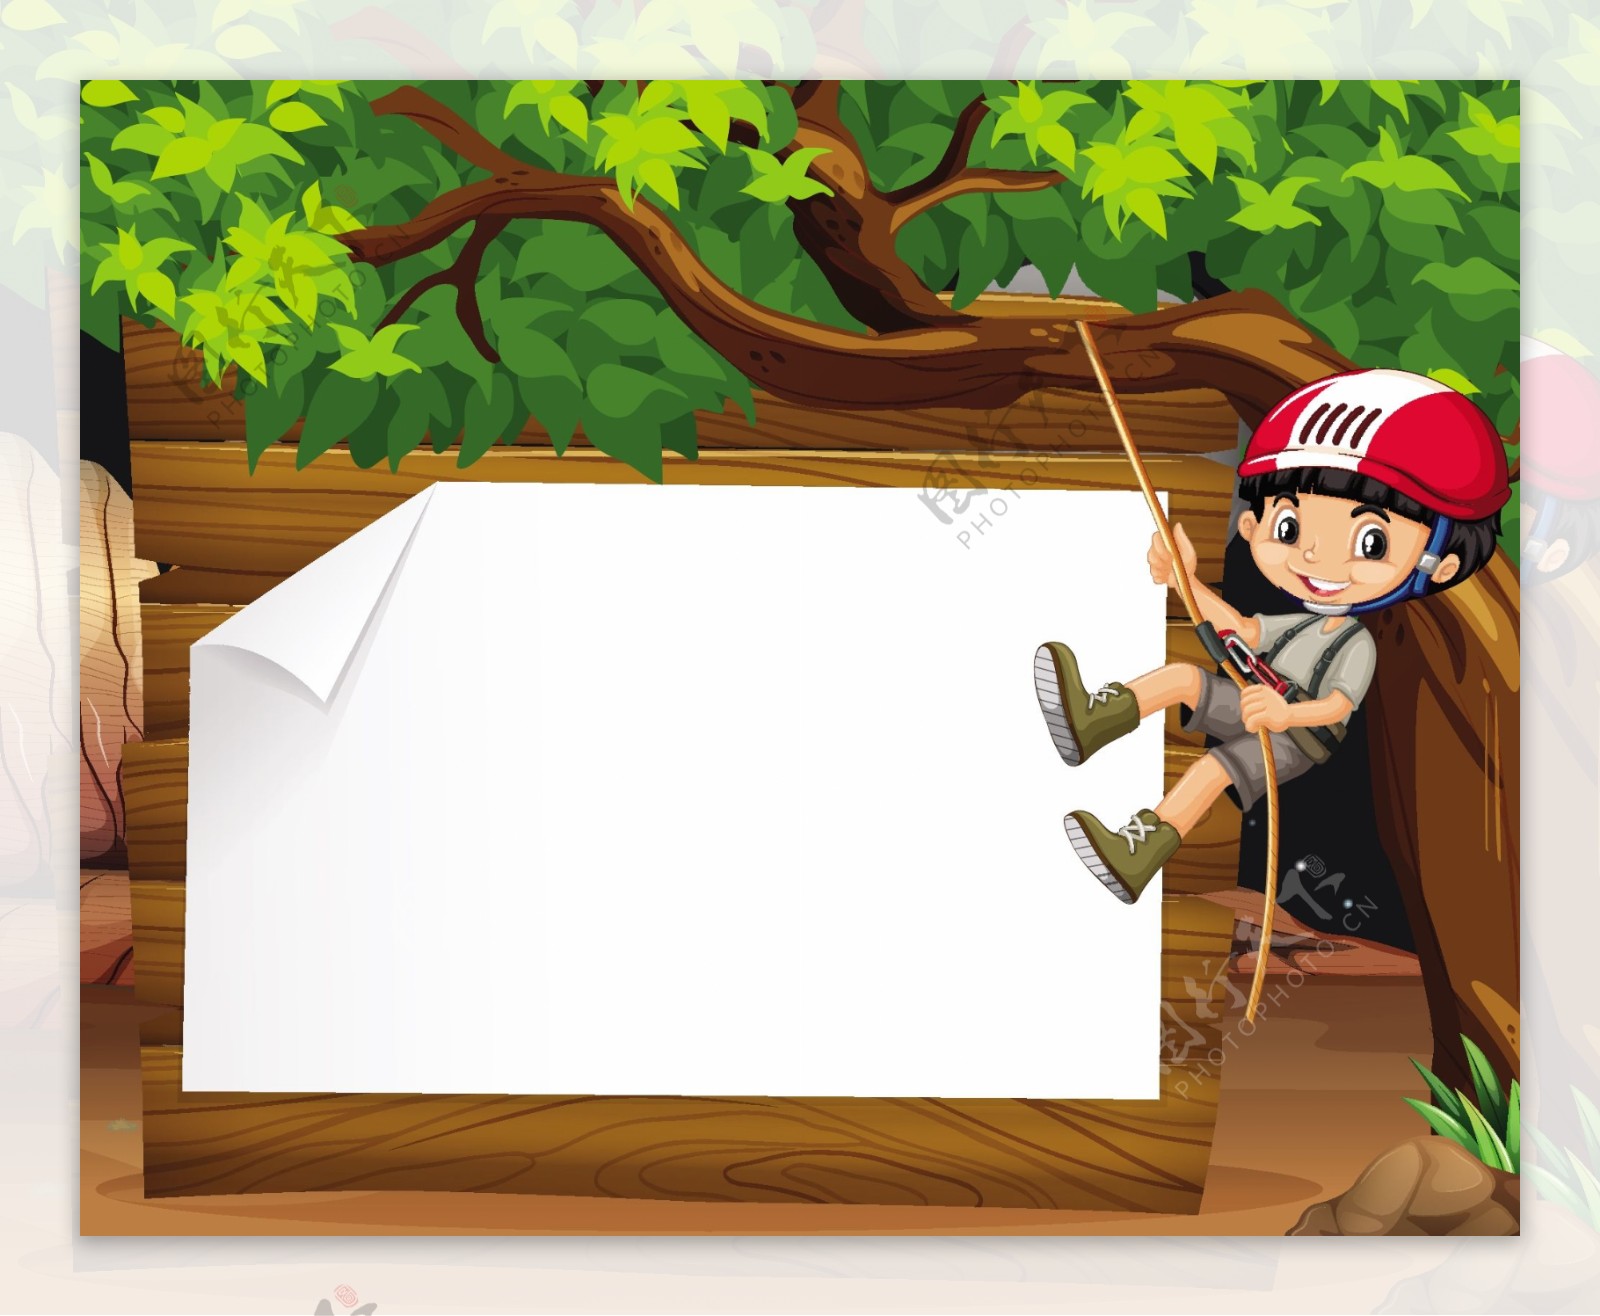 男孩爬上树插图的边界设计